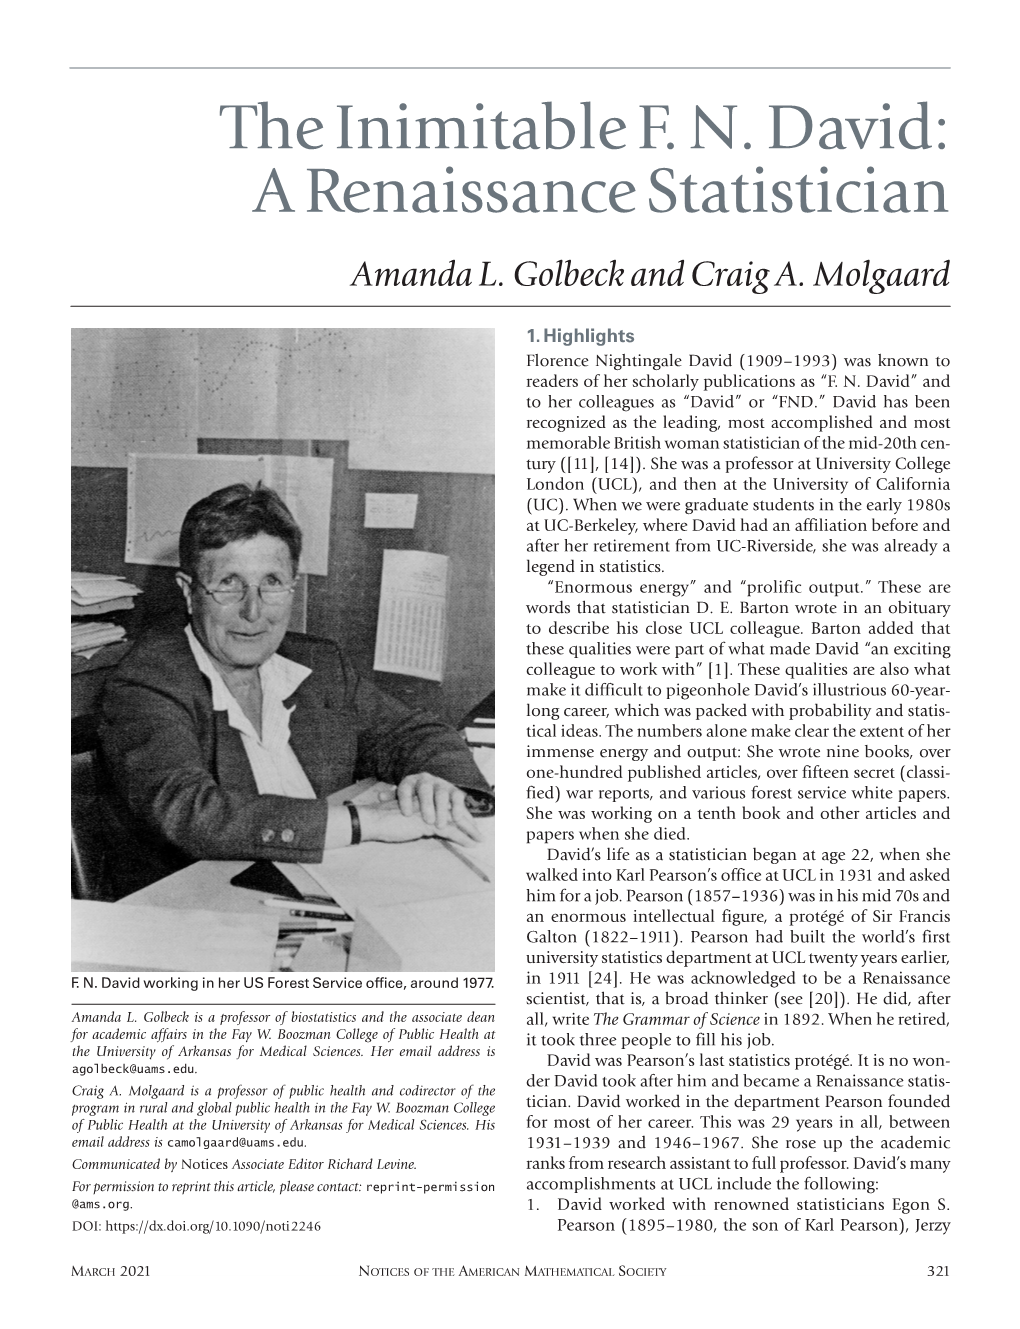 The Inimitable F. N. David: a Renaissance Statistician Amanda L